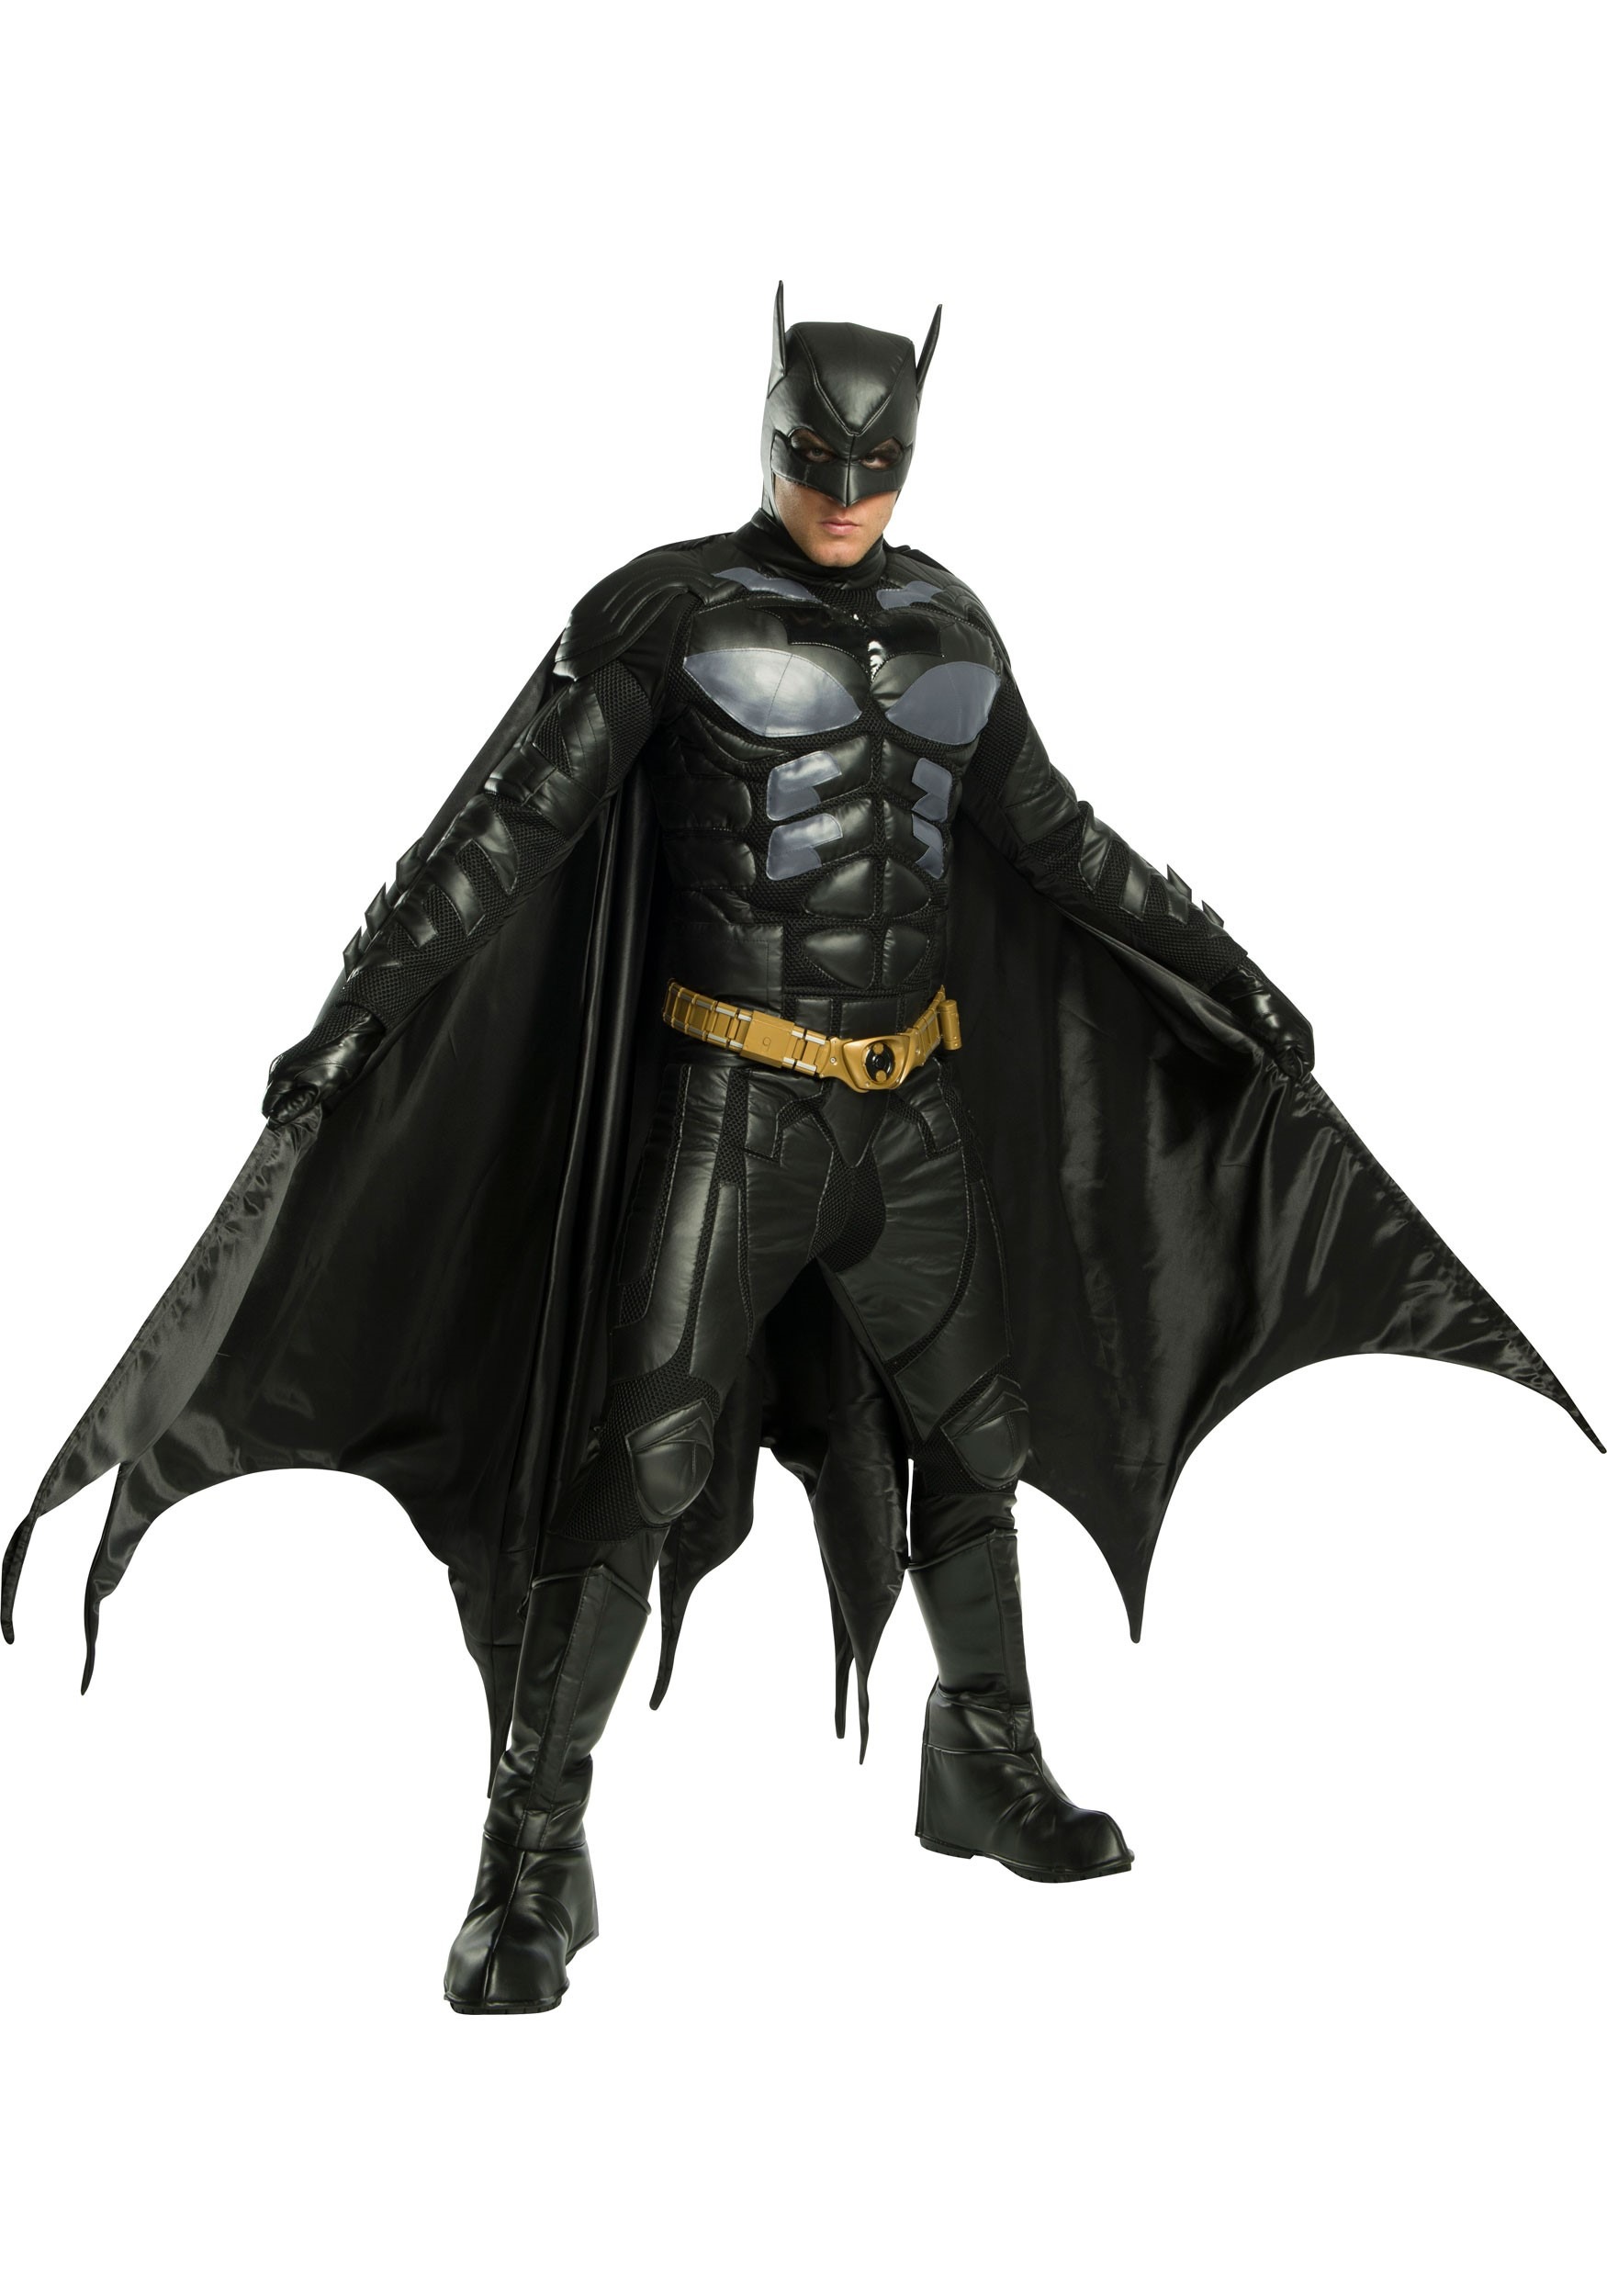 Plus Size Batman Costume for Men